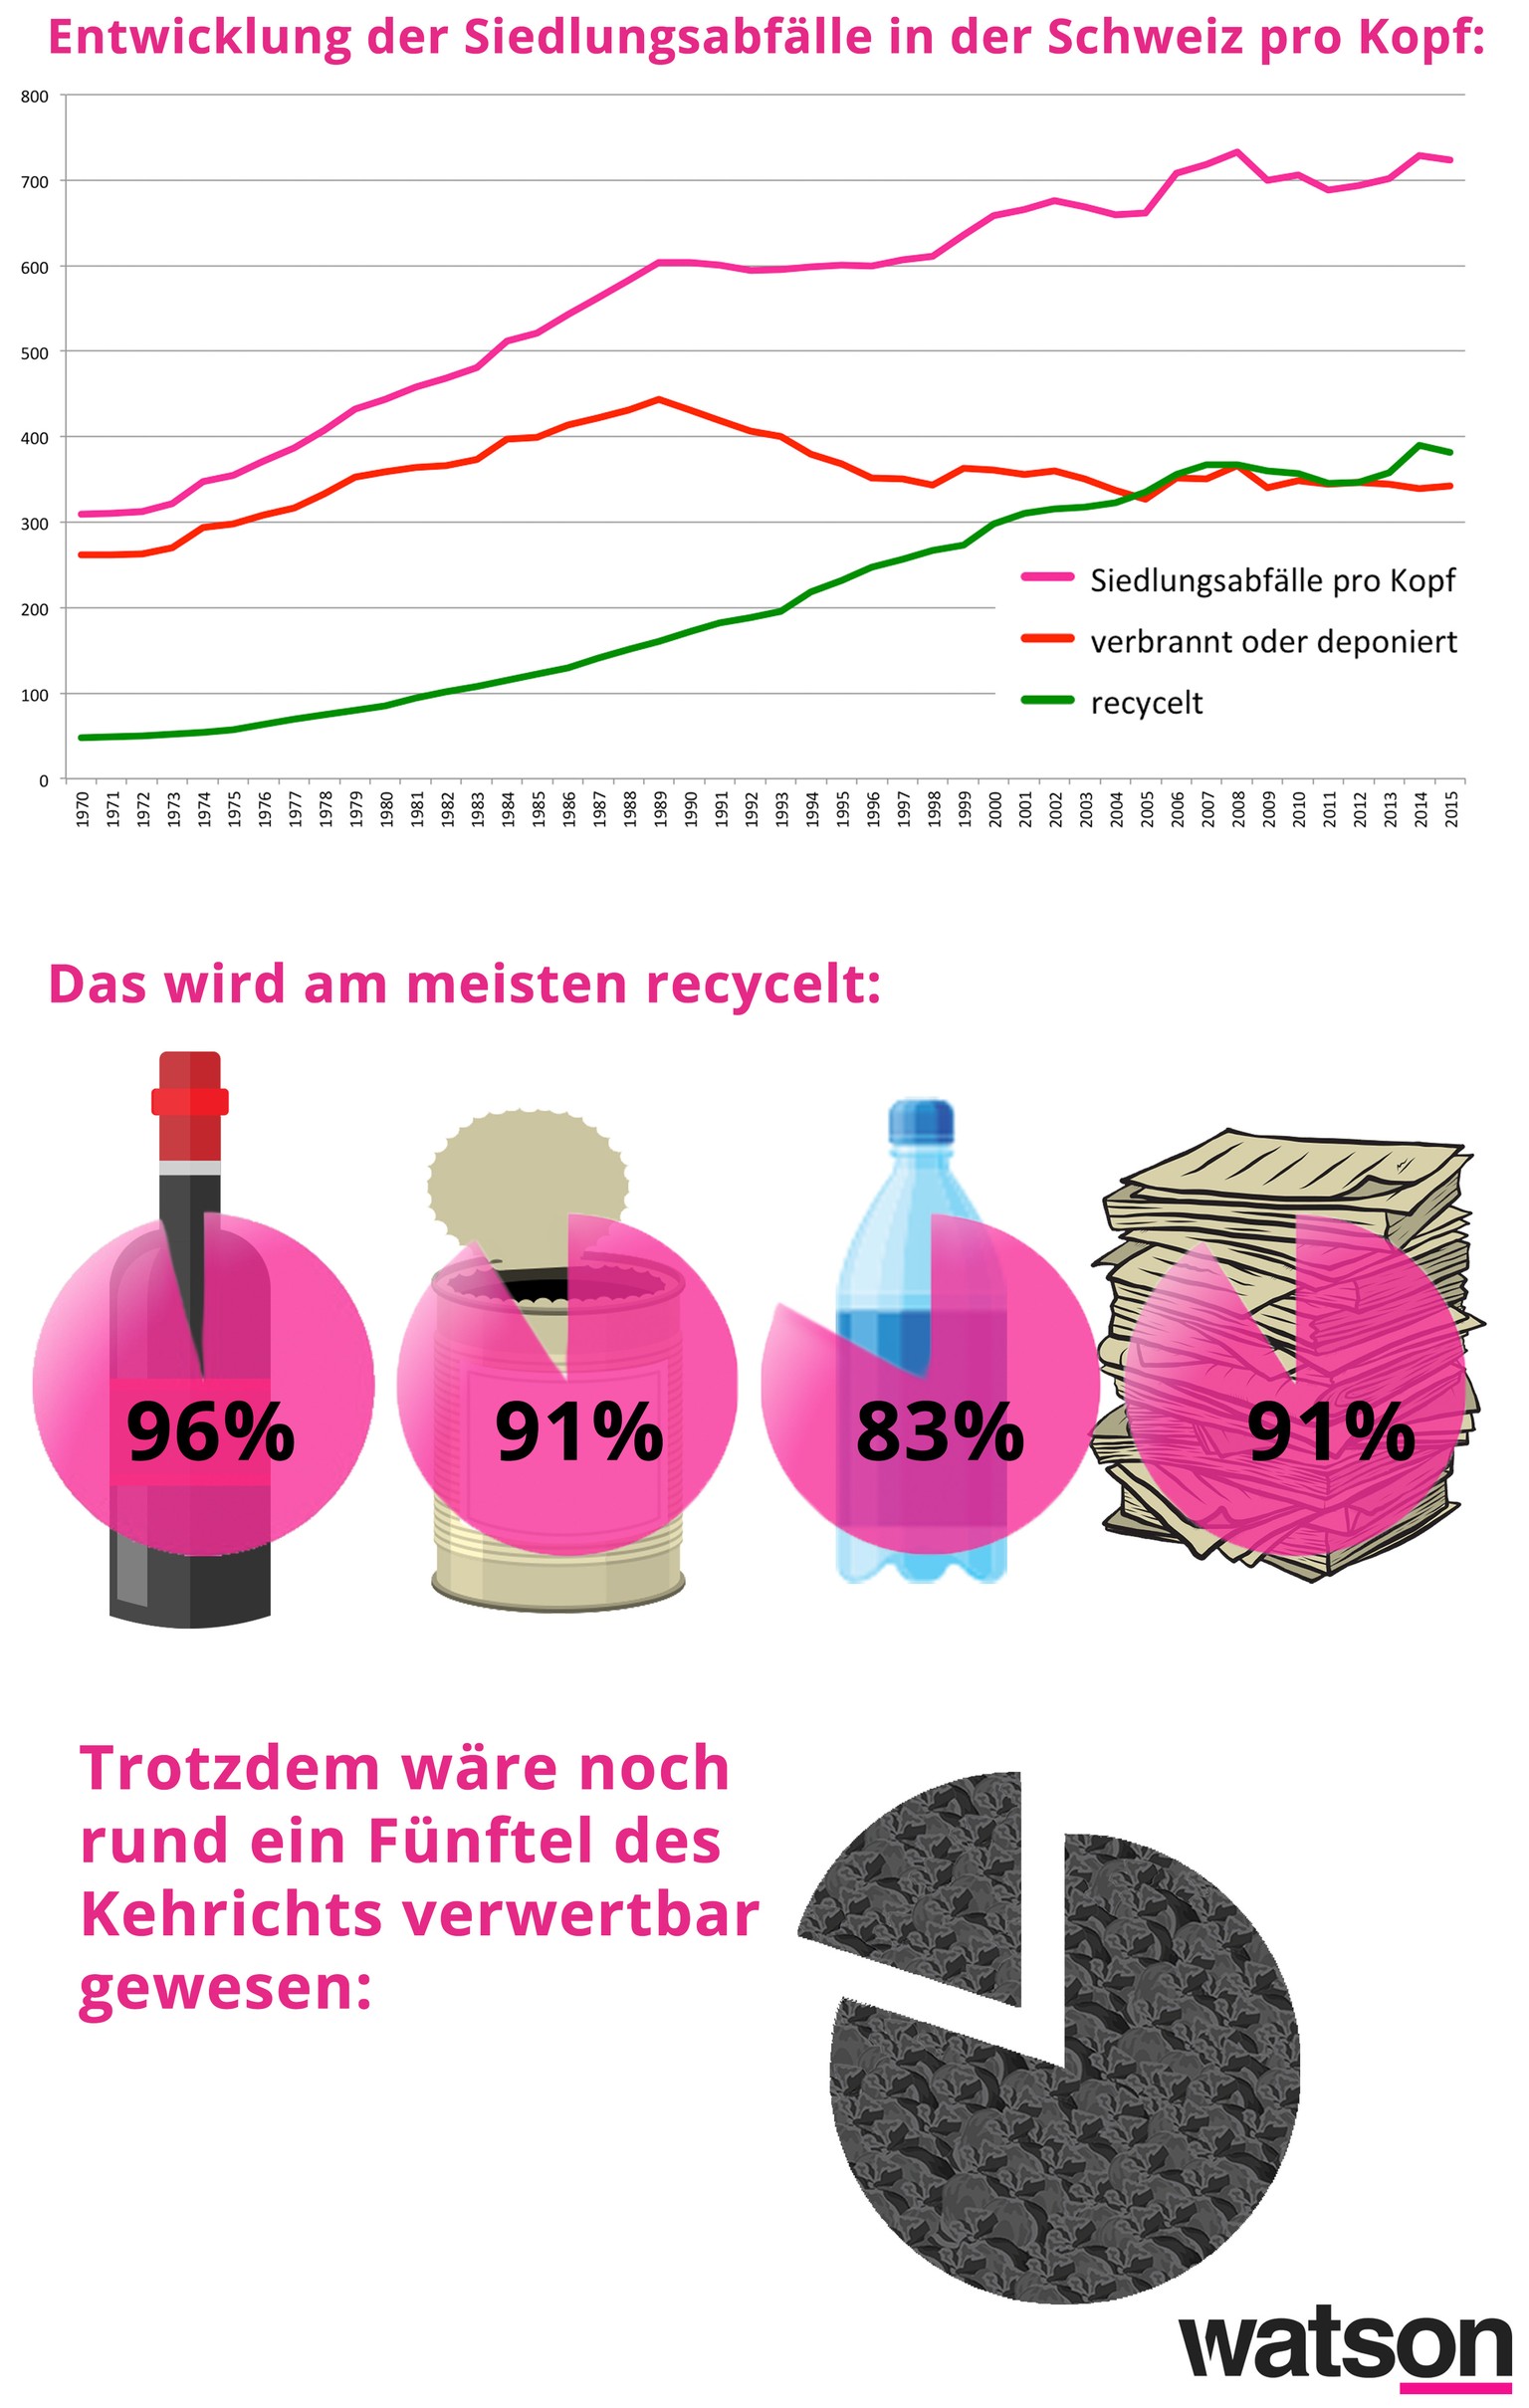 Die Recycling-Zahlen wurden für das Jahr 2013 erhoben.&nbsp;